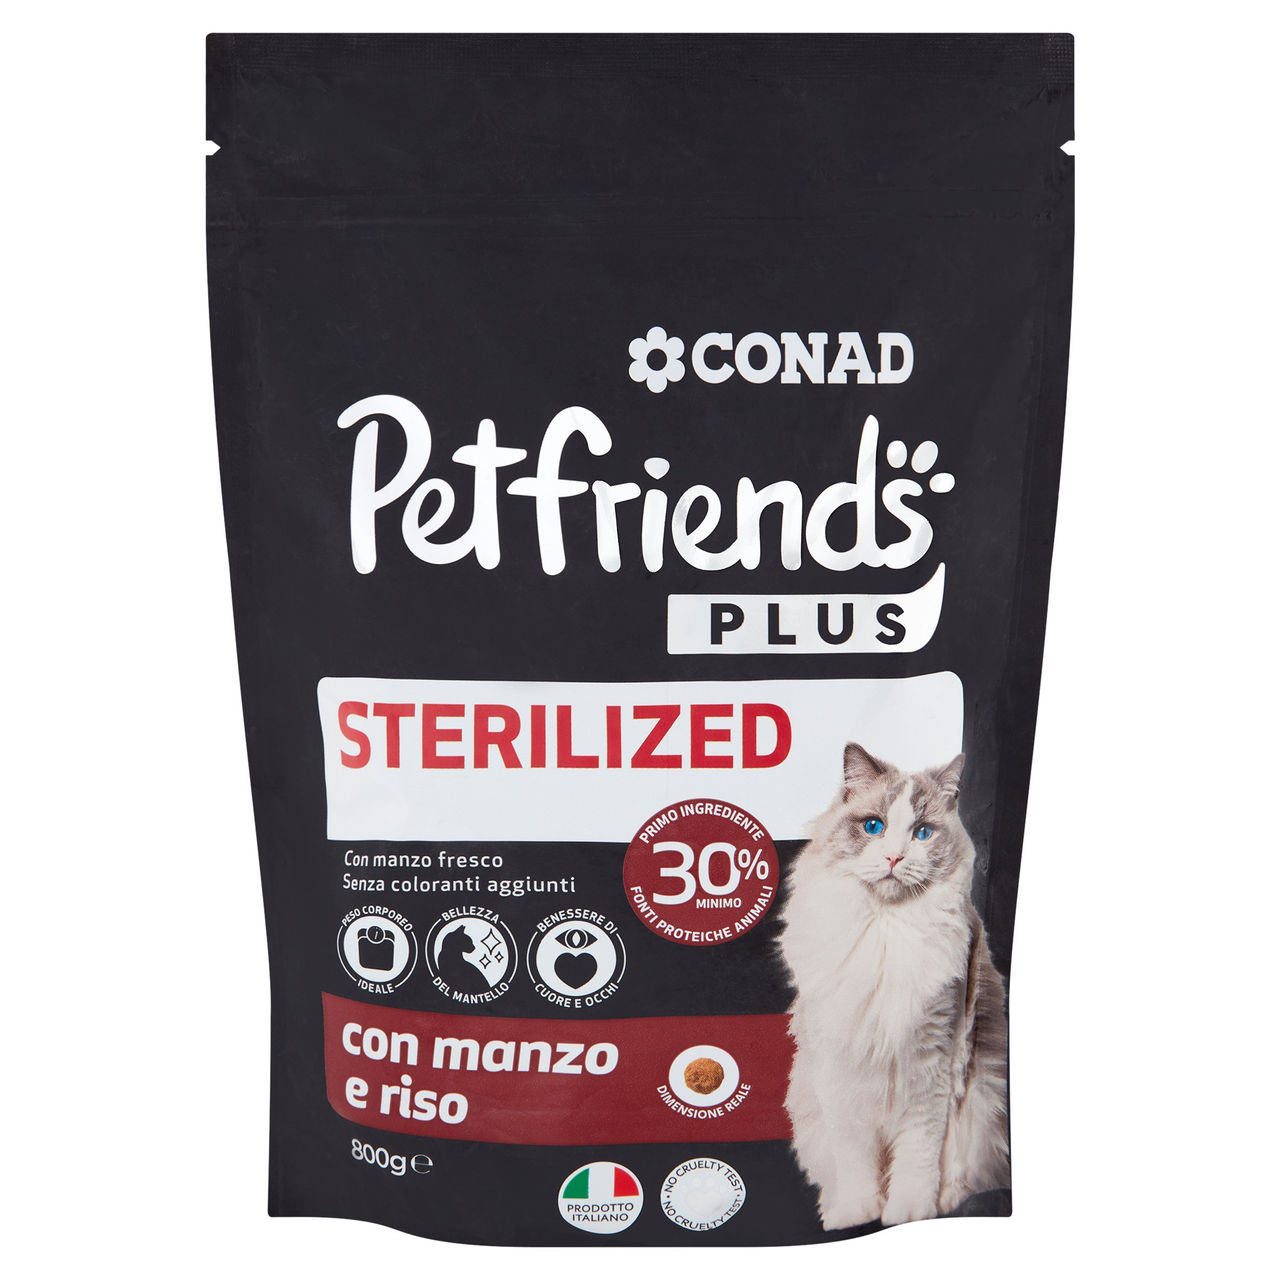 Petfriends Plus Sterilized con manzo e riso